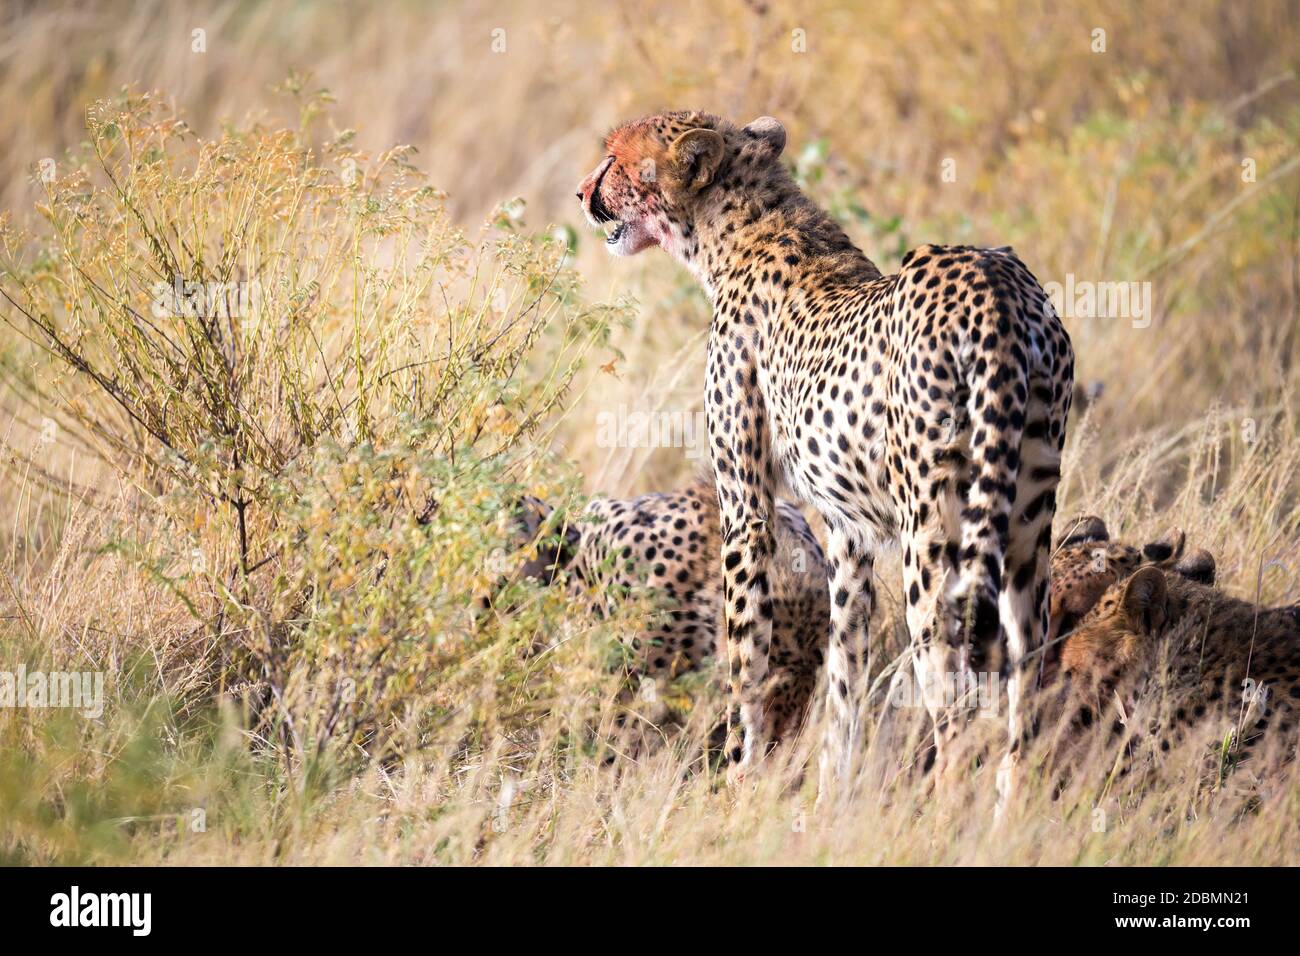 Les cheetahs mangeant au milieu de l'herbe Banque D'Images